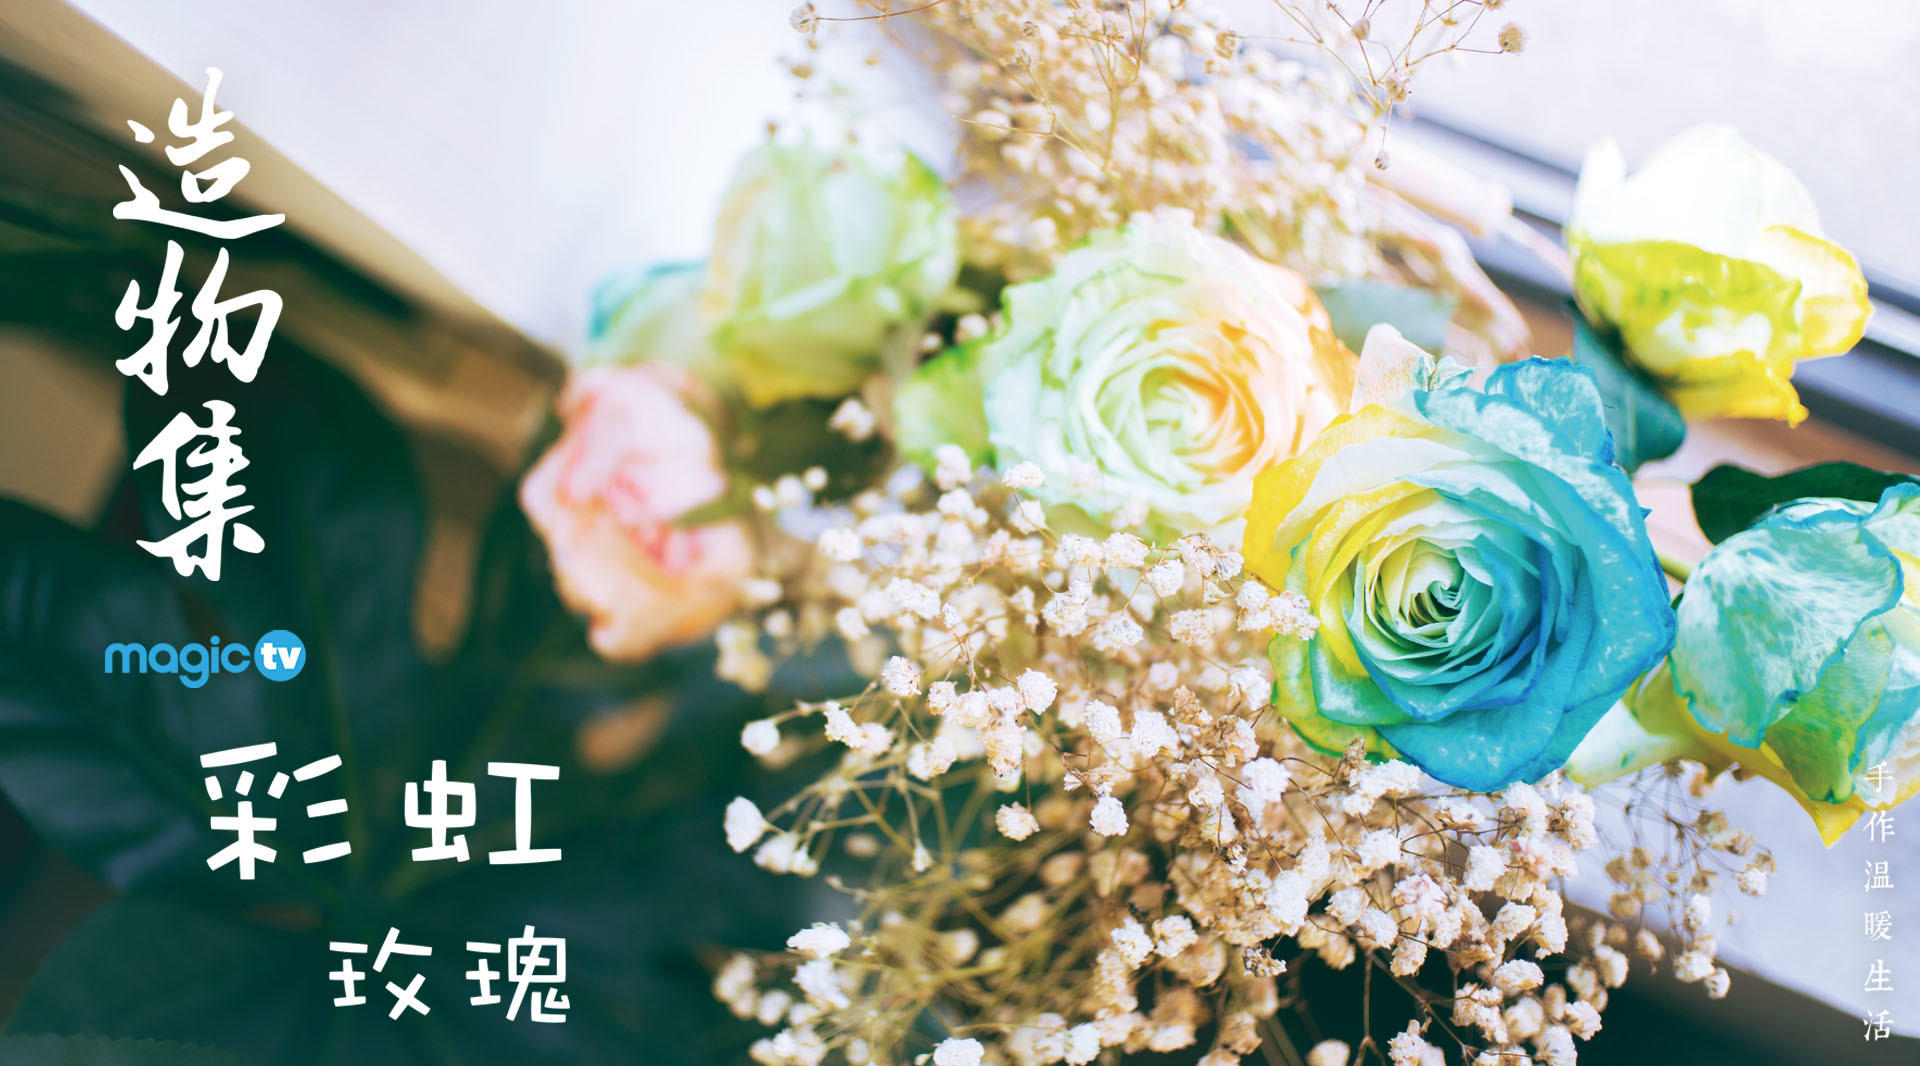 【造物集】S308——彩虹玫瑰